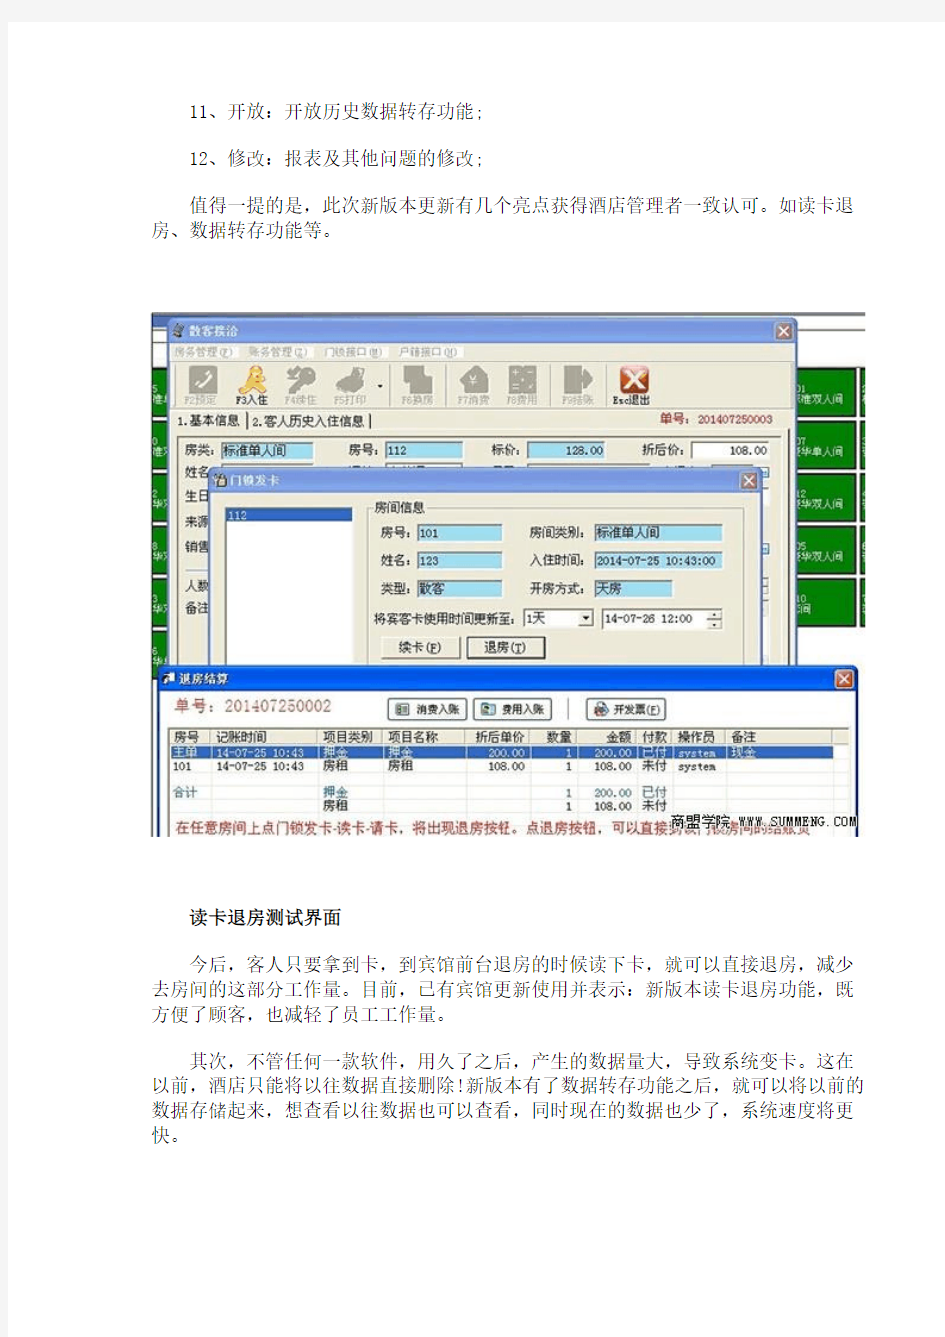 腾云宾馆管理软件发布最新版本V6.1.10